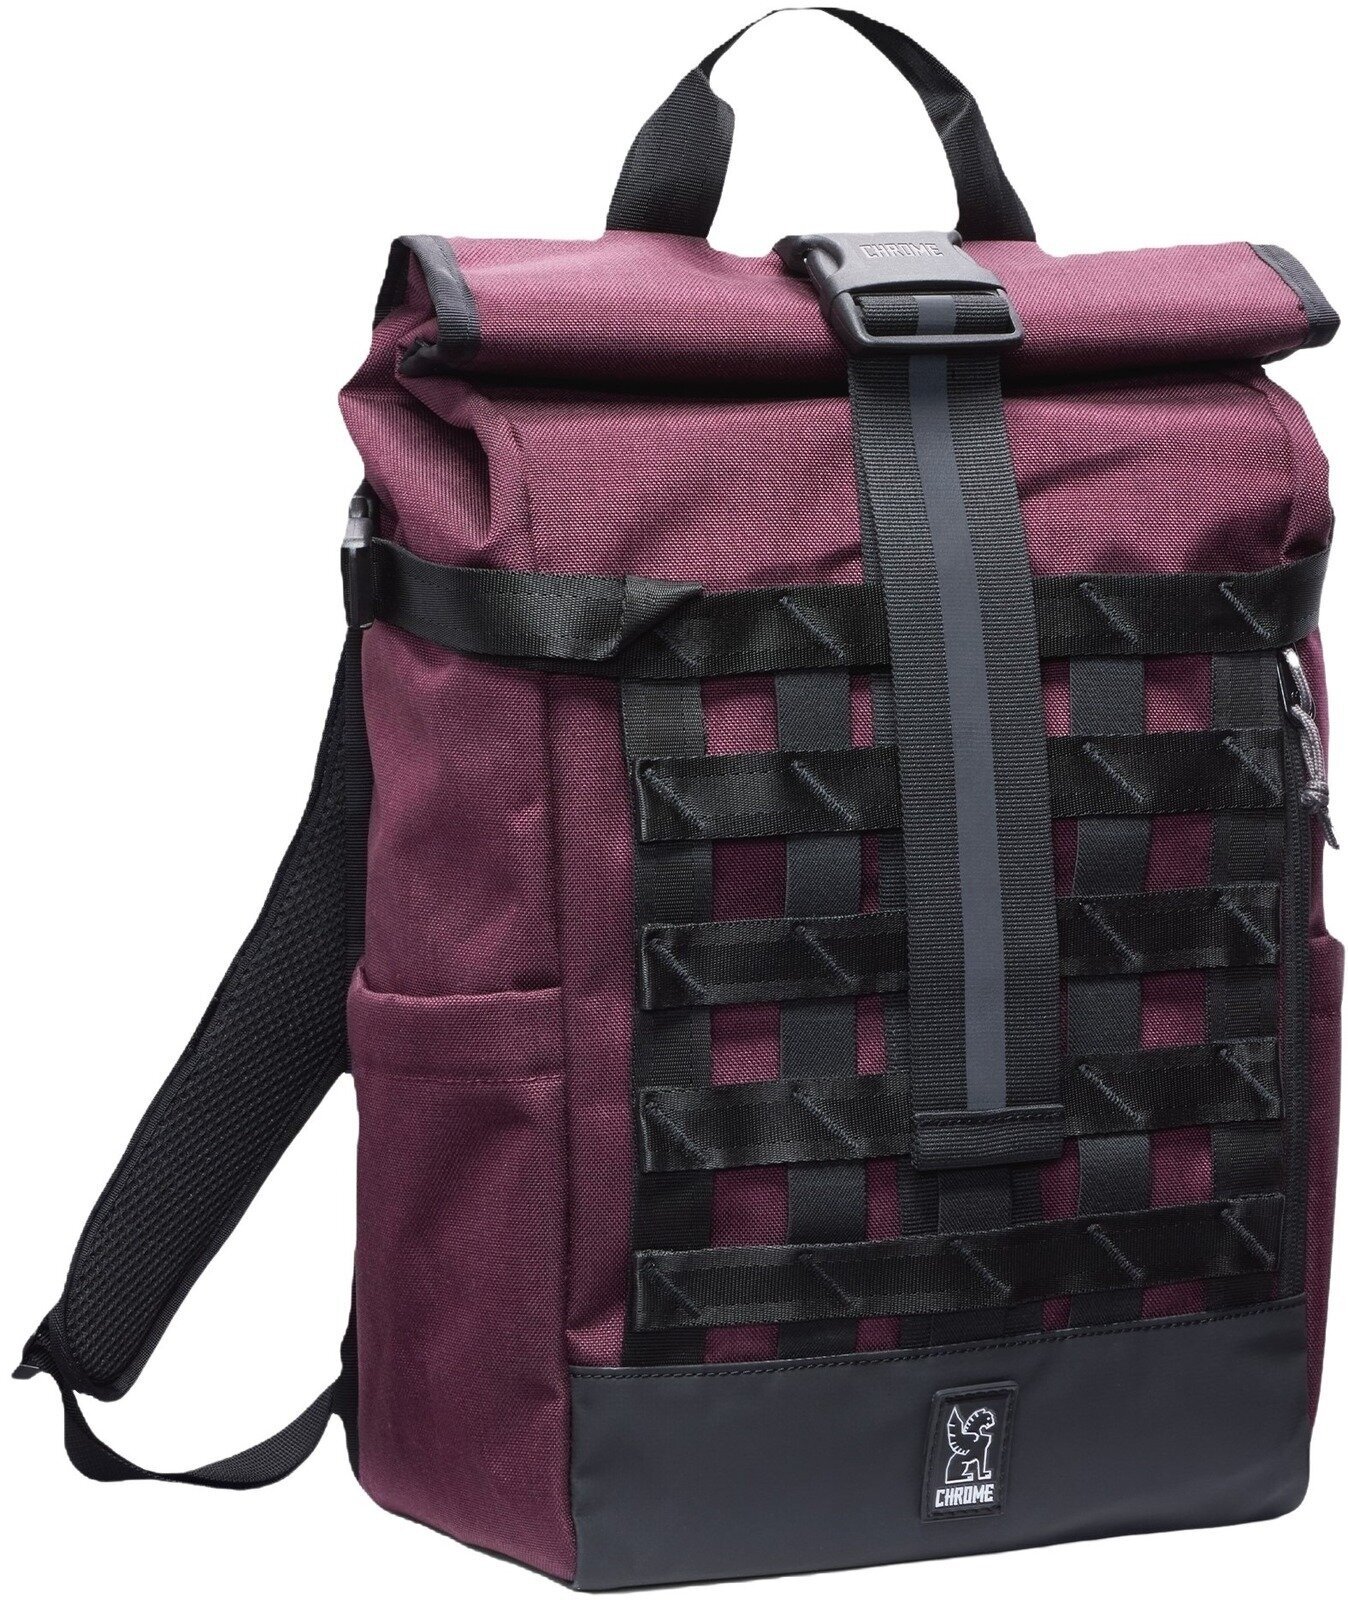 Lifestyle Backpack / Bag Chrome Barrage Backpack Royale 18 L Backpack